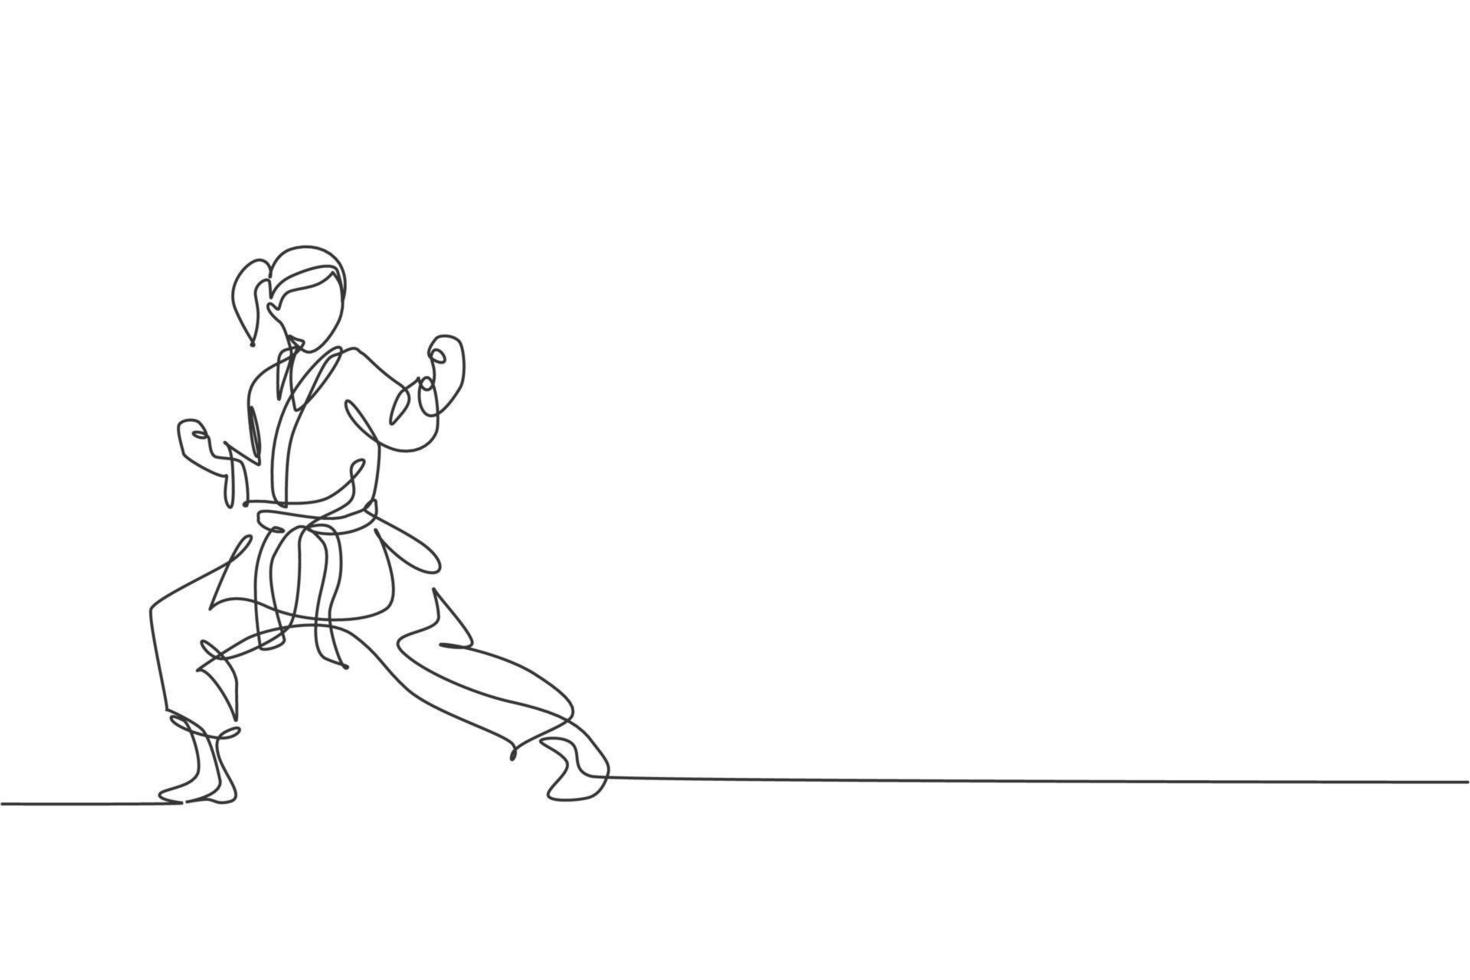 één enkele lijntekening van jong sportief karateka-meisje in gevechtsuniform met riem die krijgskunst uitoefent op sportschool vectorillustratie. gezonde sport levensstijl concept. modern ononderbroken lijntekeningontwerp vector